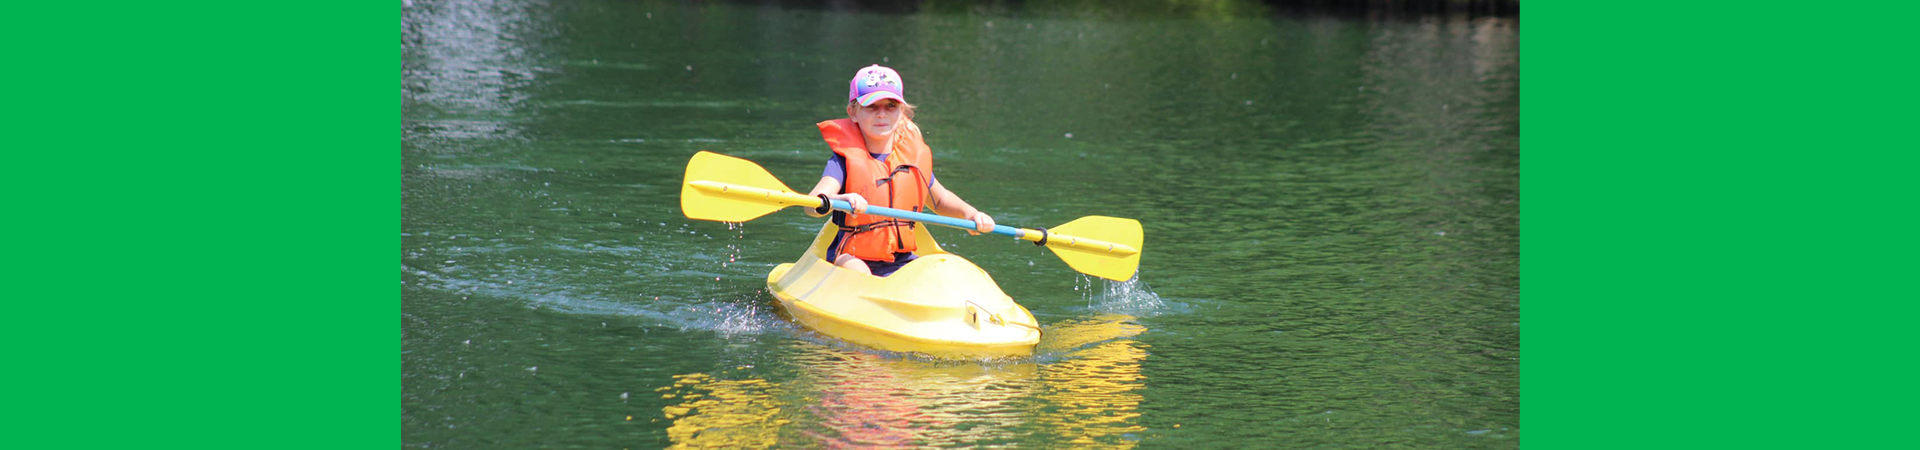  girl scout kayaking on a lake 